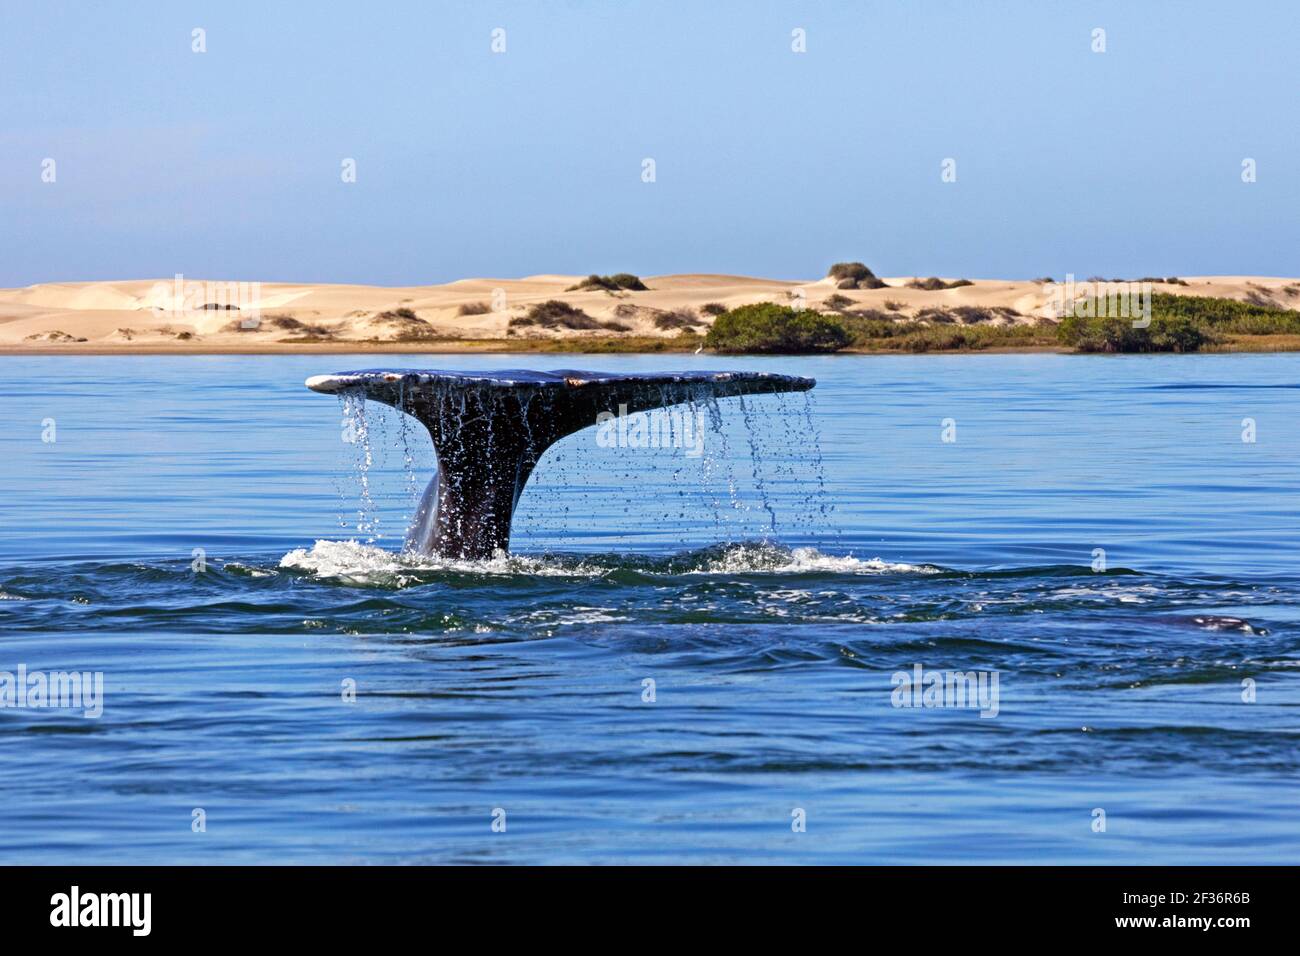 Ballena gris del Pacífico (Eschrichtius robustus) levantando sus flukes de cola para bucear para alimentarse cerca de Puerto Adolfo López Mateos, Baja California Sur, México Foto de stock